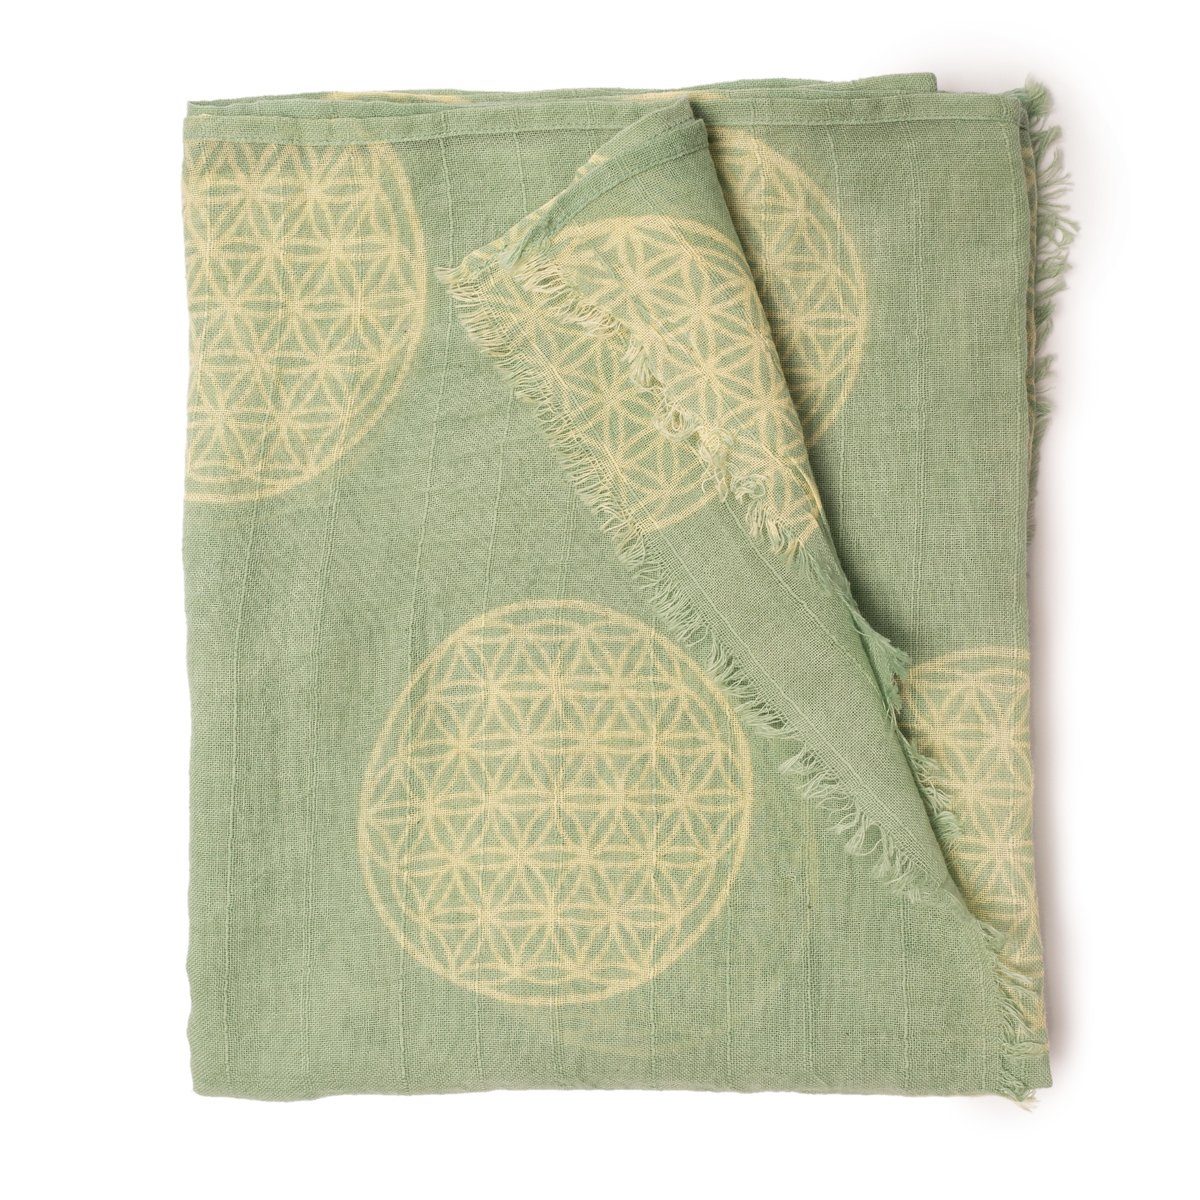 PANASIAM Halstuch elegantes Schaltuch auch als Schultertuch Schal oder Stola tragbar, in schönen farbigen Designs mit kleinen Fransen aus Baumwolle Lebensblume grün